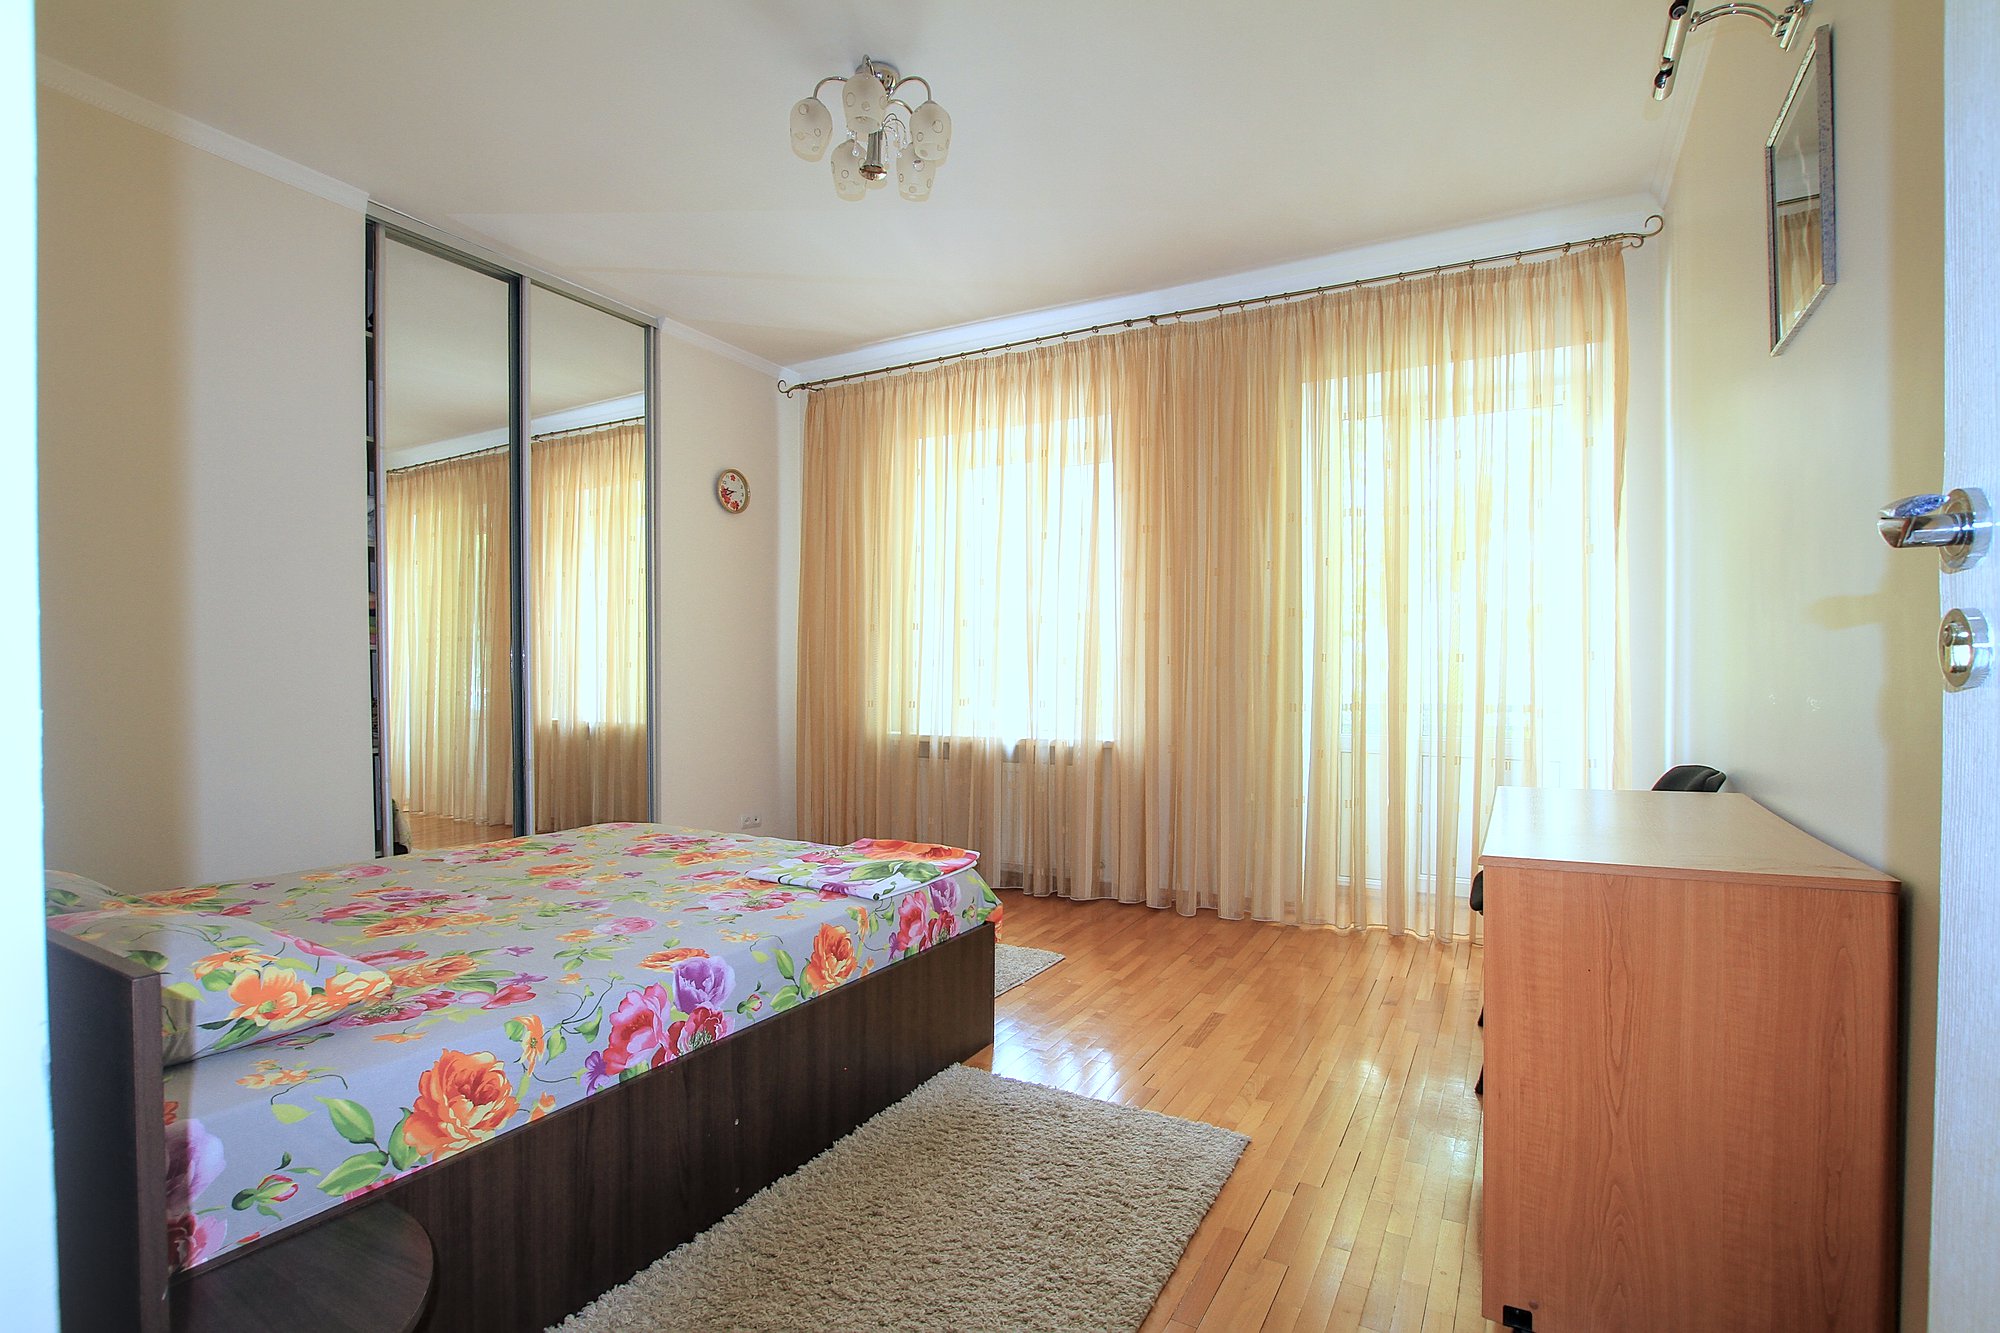 Downtown Lease est un appartement de 3 pièces à louer à Chisinau, Moldova